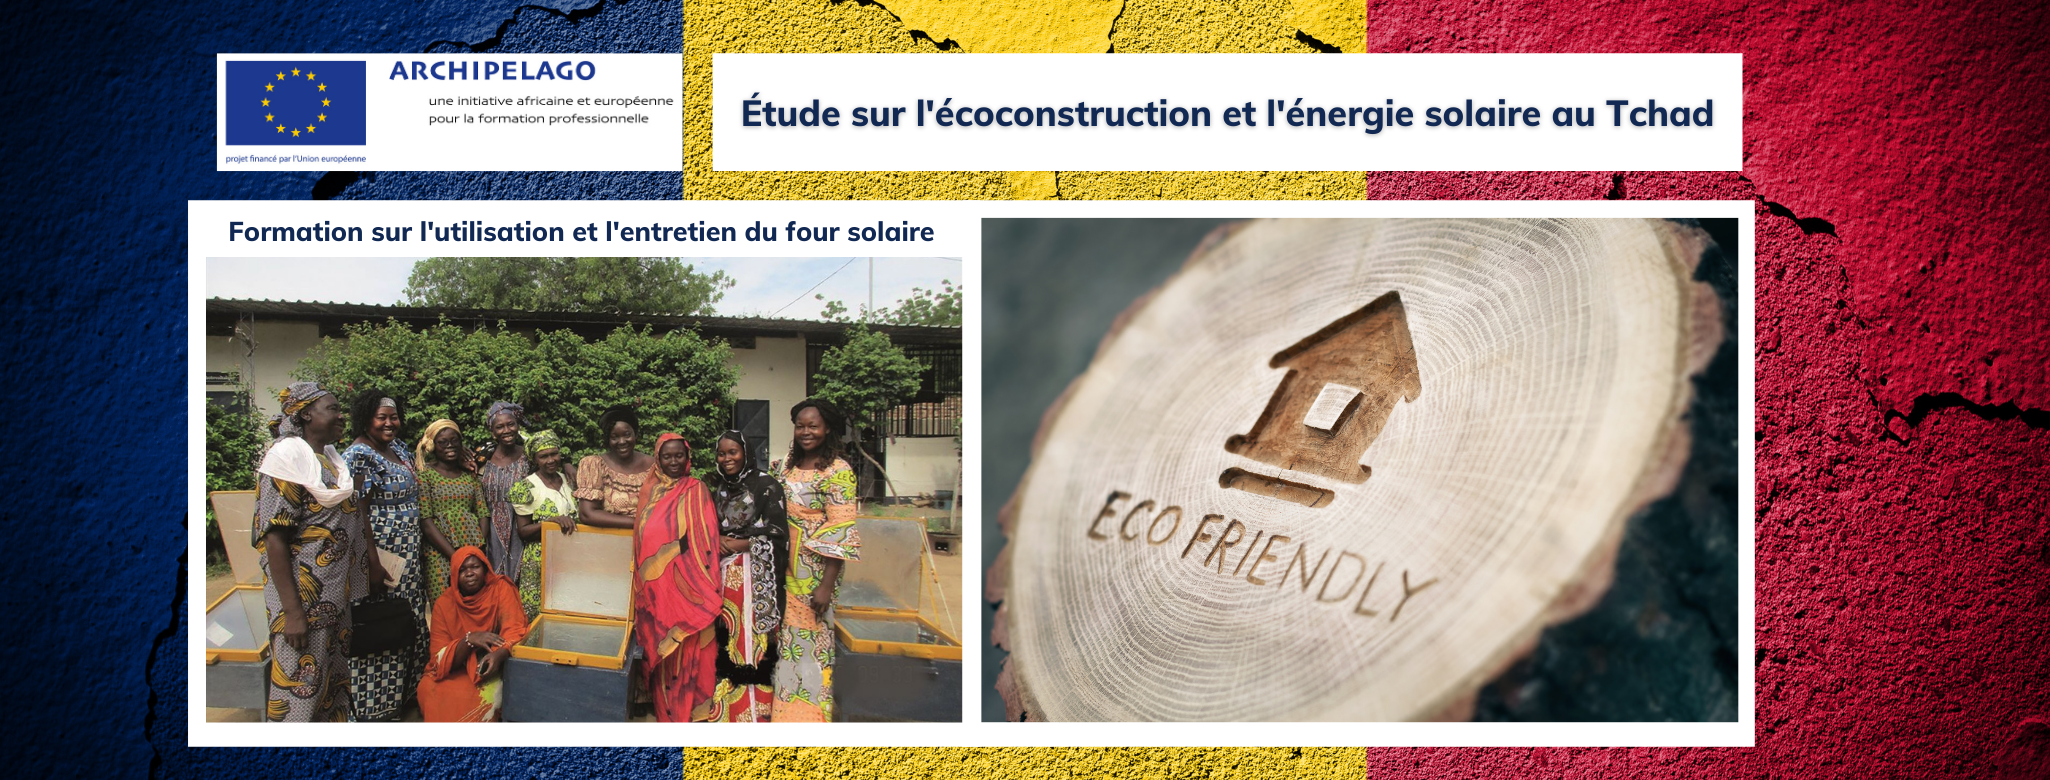 Programme européen ARCHIPELAGO: Étude sur l’écoconstruction et l’énergie solaire au Tchad